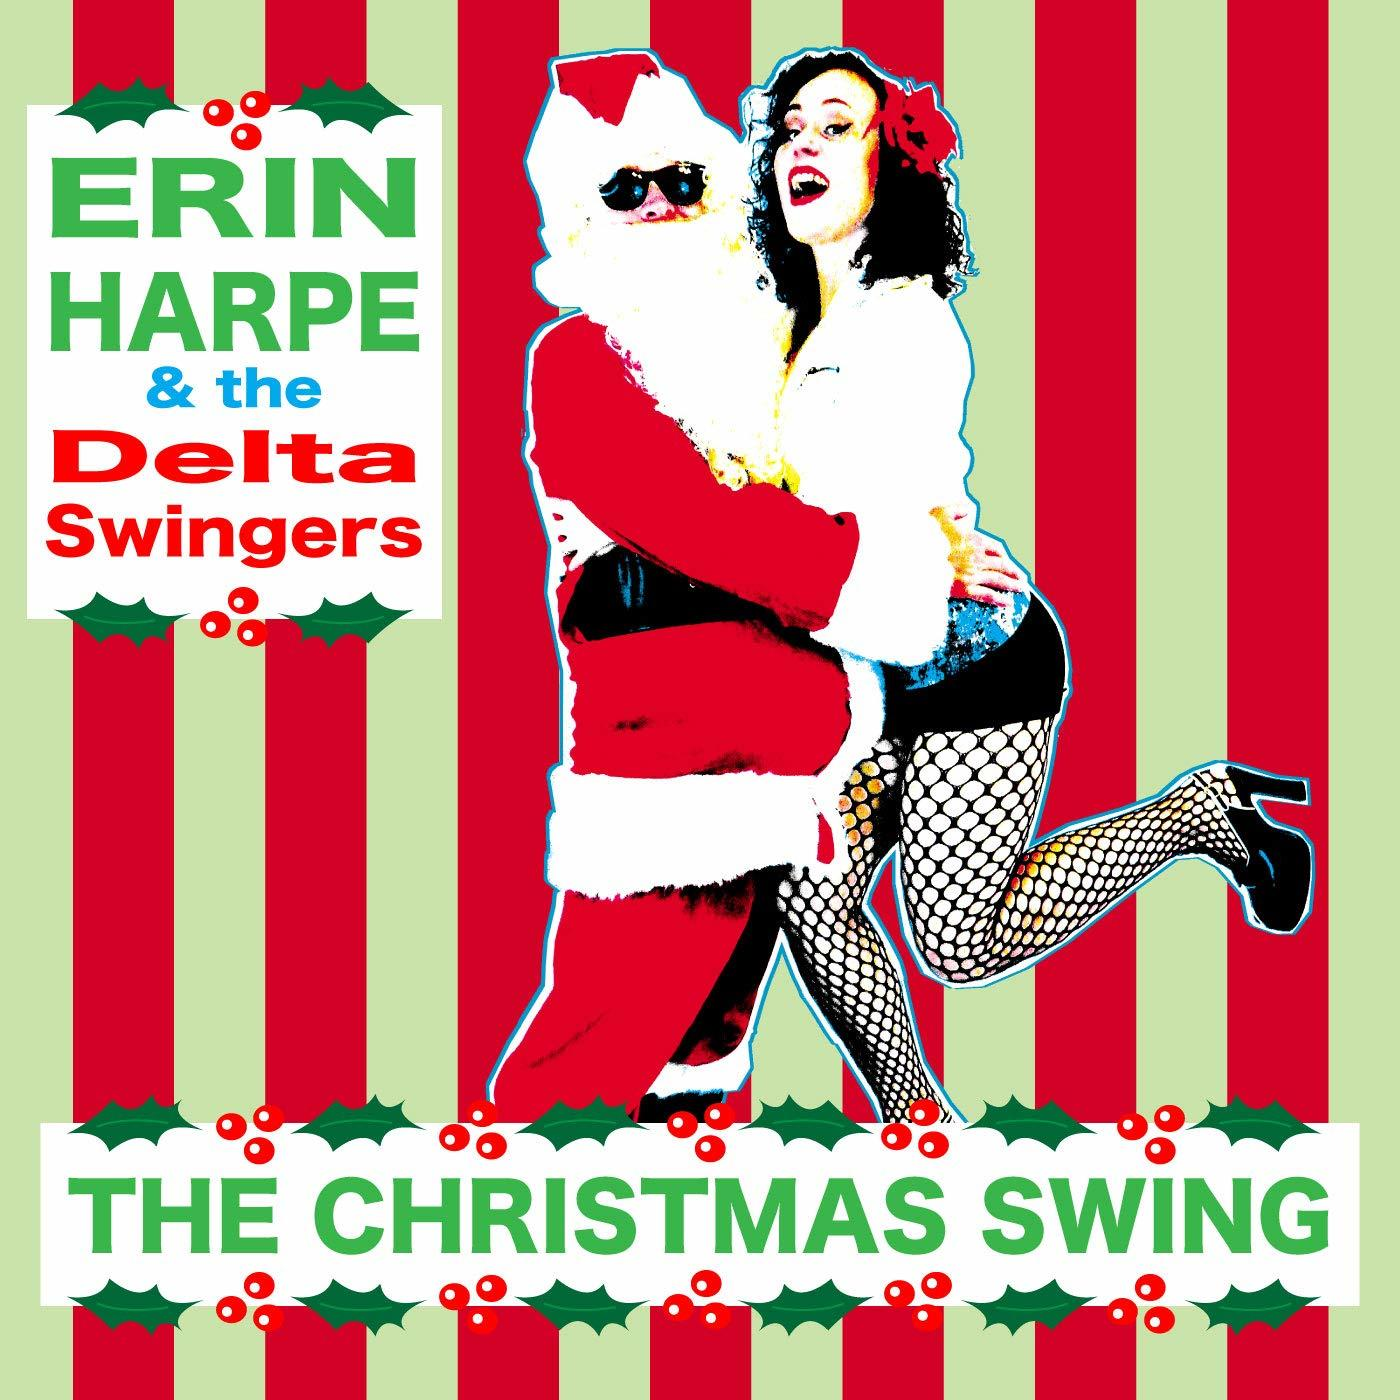 The - Swingers- Harpe - (CD) SWING CHRISTMAS Delta Erin -&